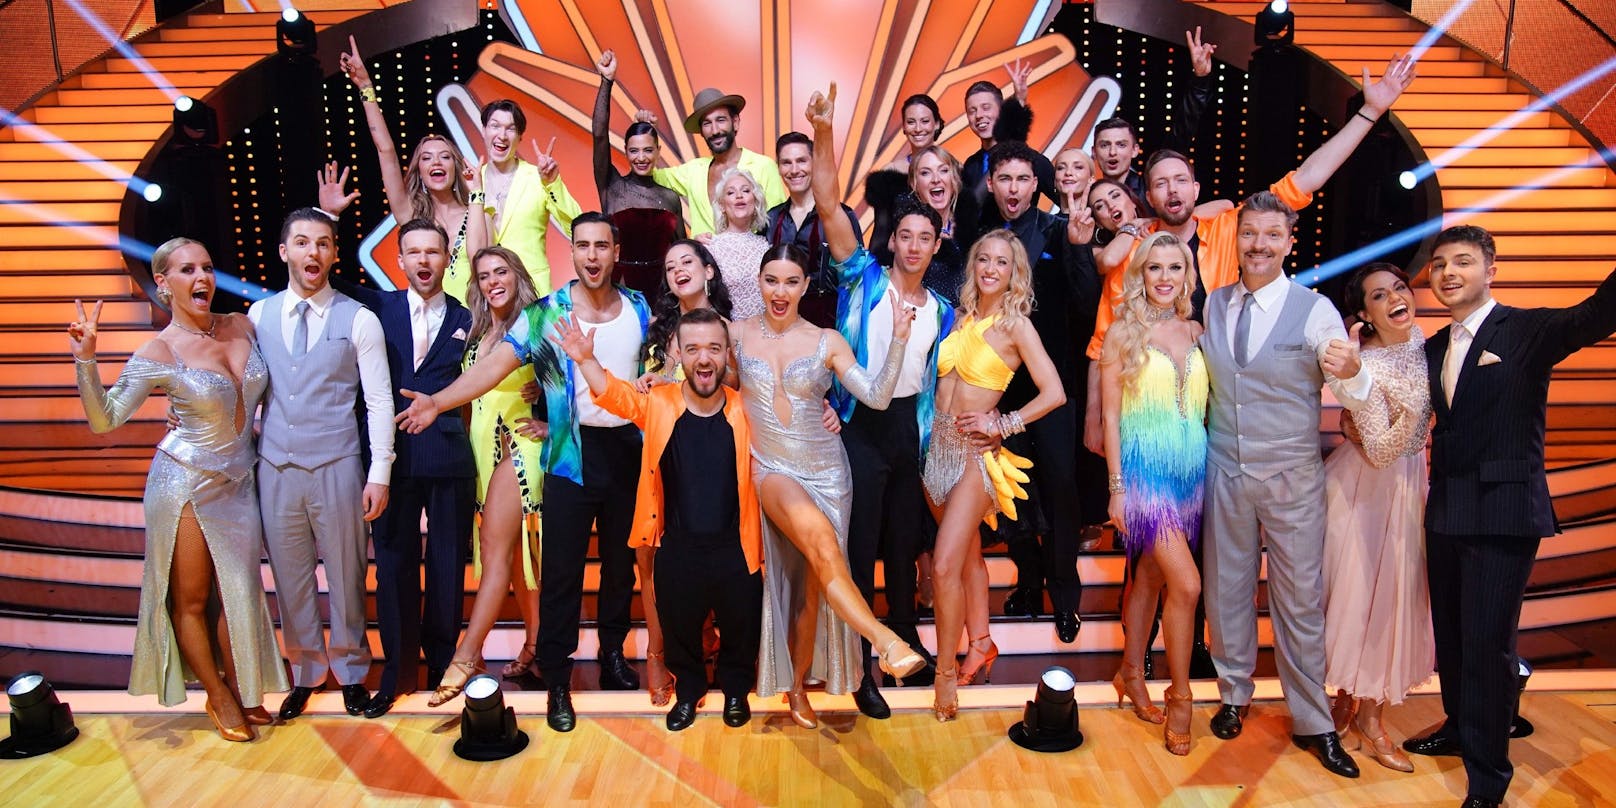 Teilnehmer von "Let's Dance" 2022.